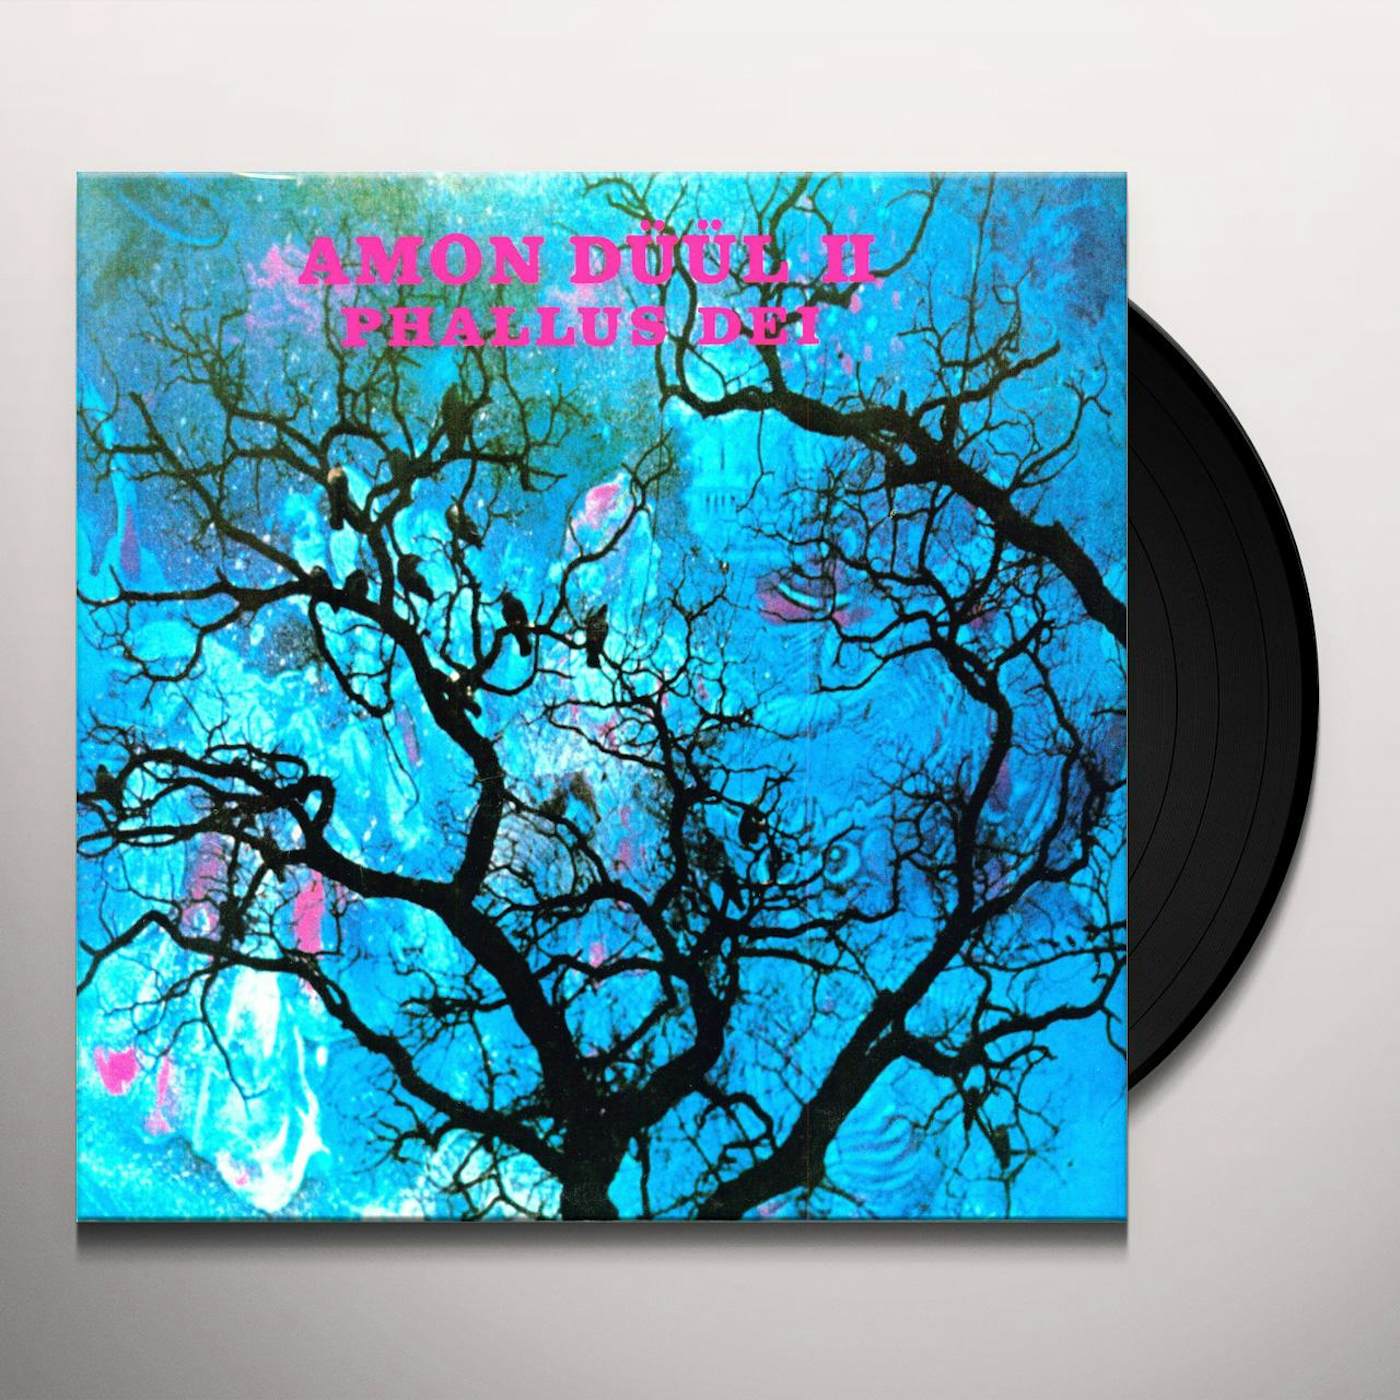 Amon Düül II Phallus Dei Vinyl Record